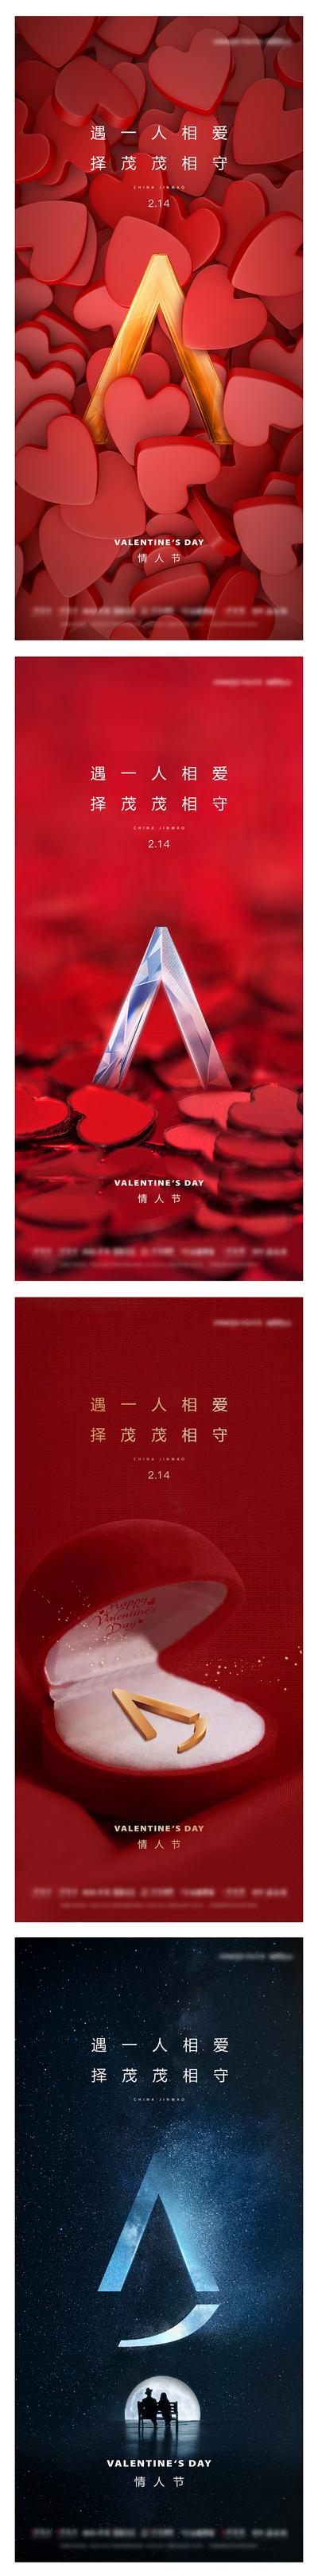 南门网 海报 公历节日 情人节 爱情 情人 系列